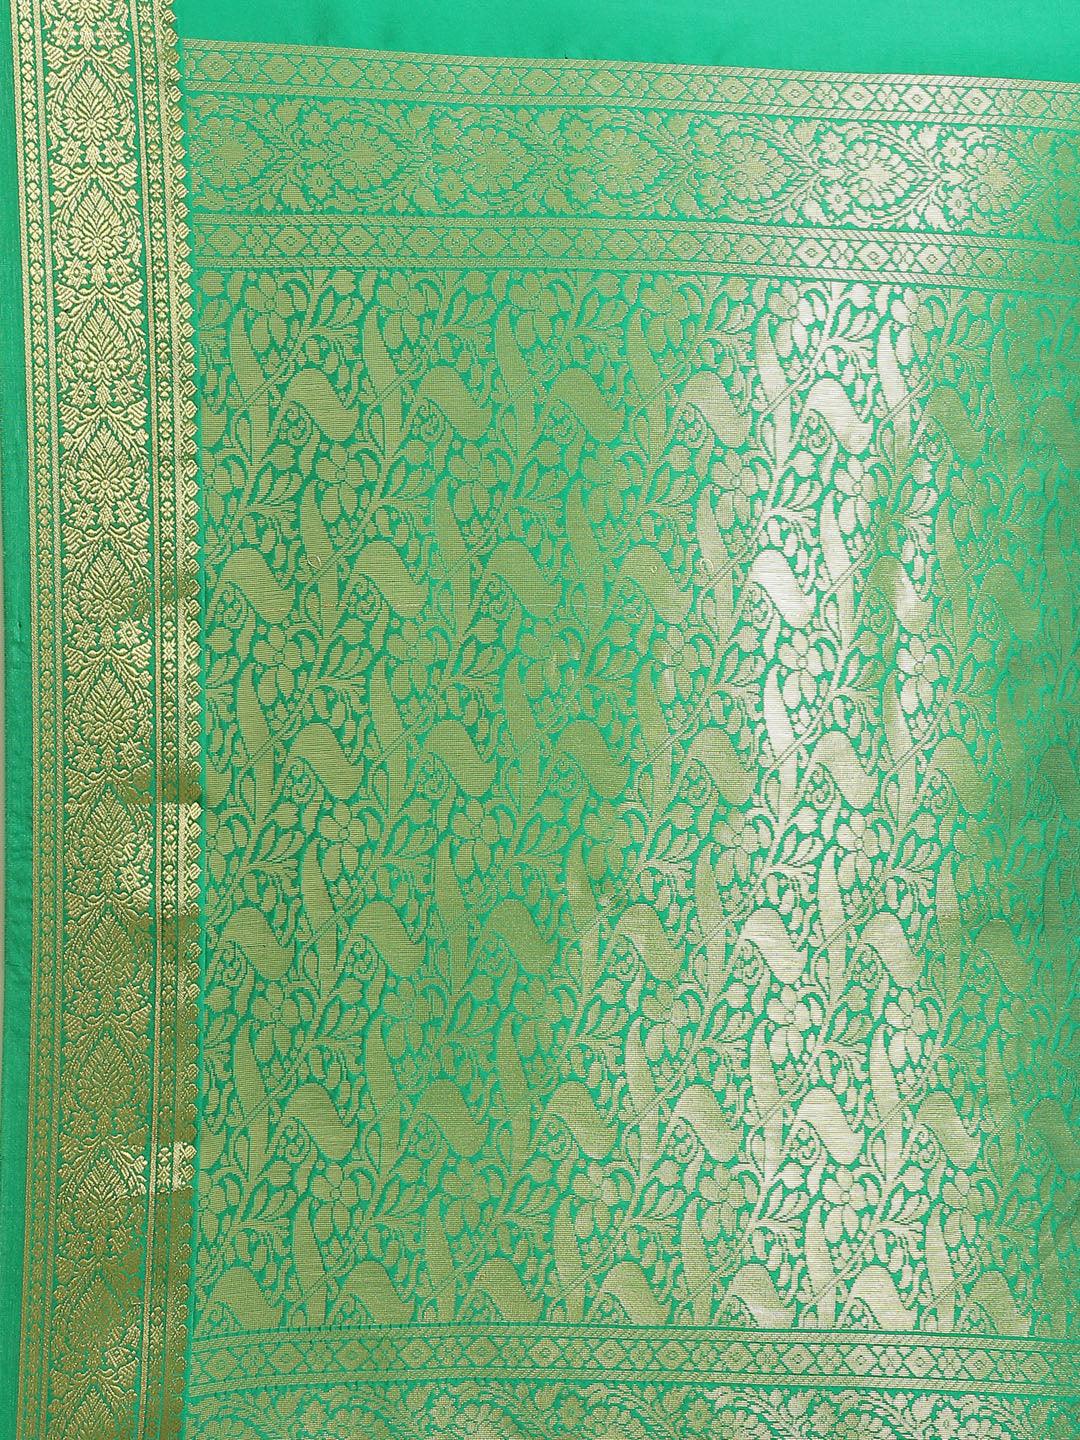 Green Solid Silk Blend Saree